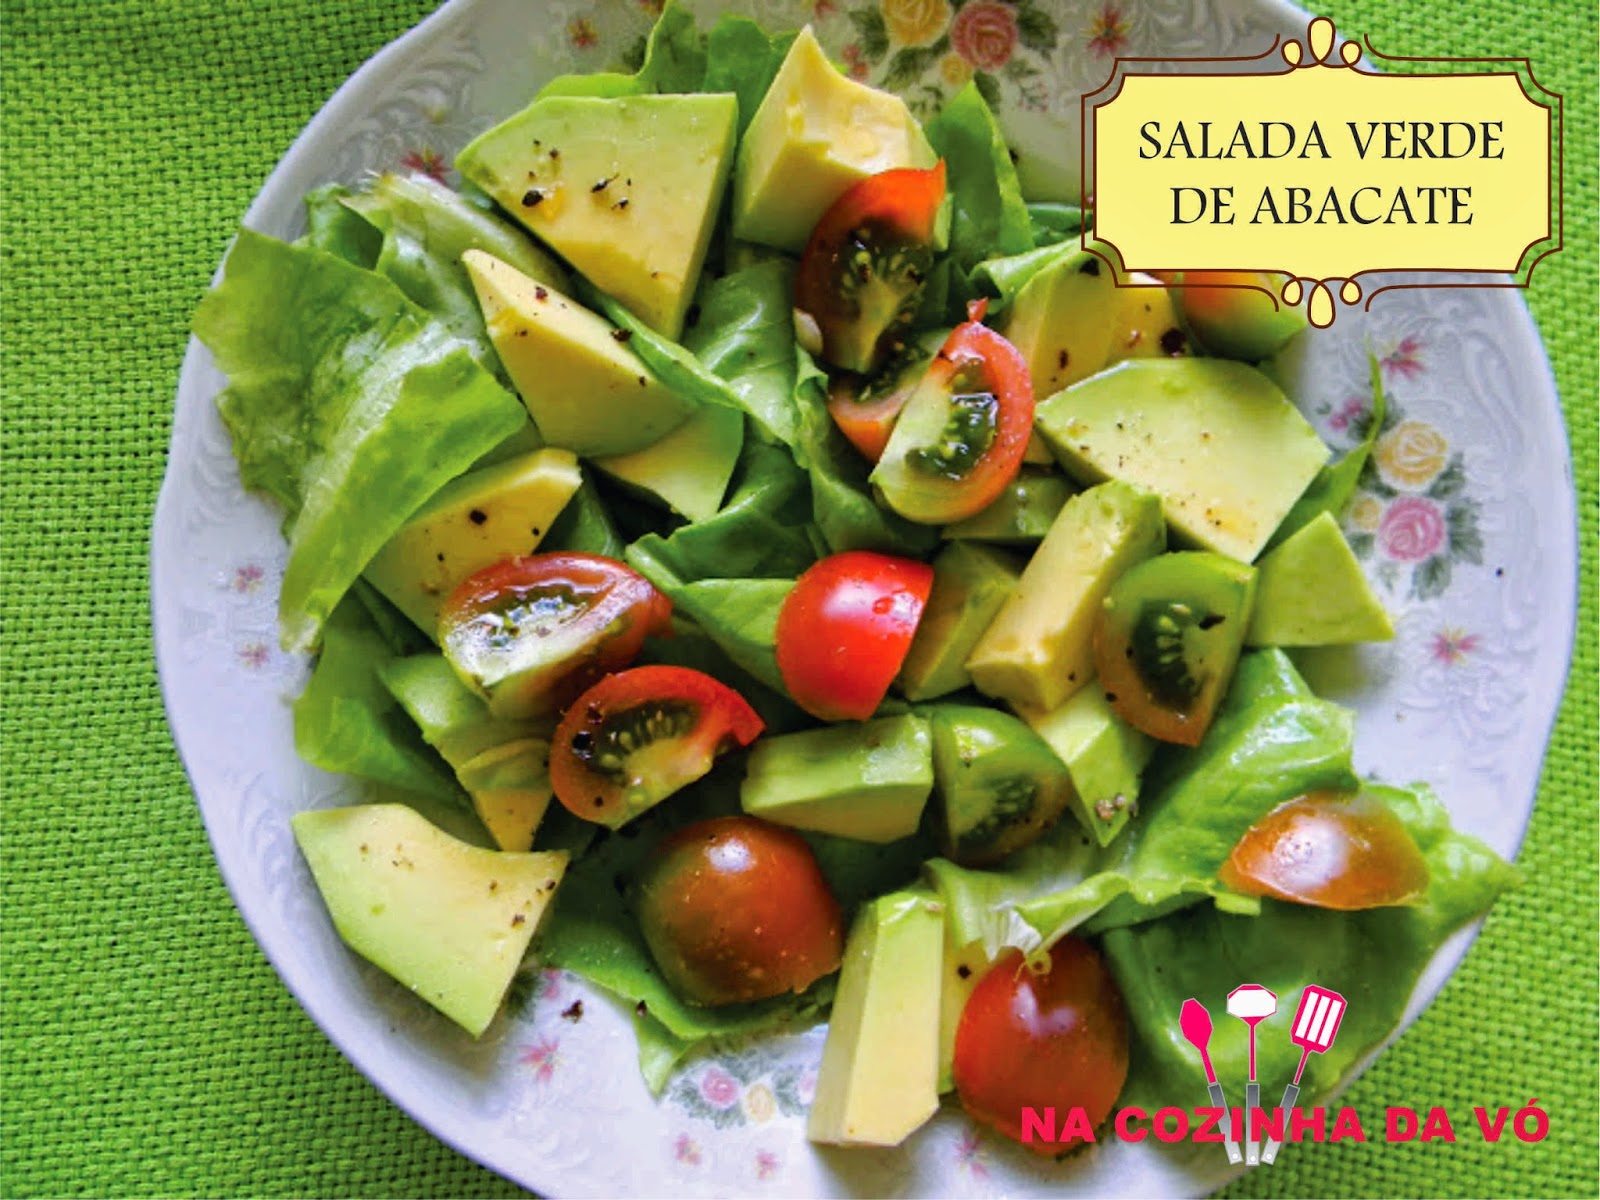 Salada # 10 - Verde de Abacate - Vegana